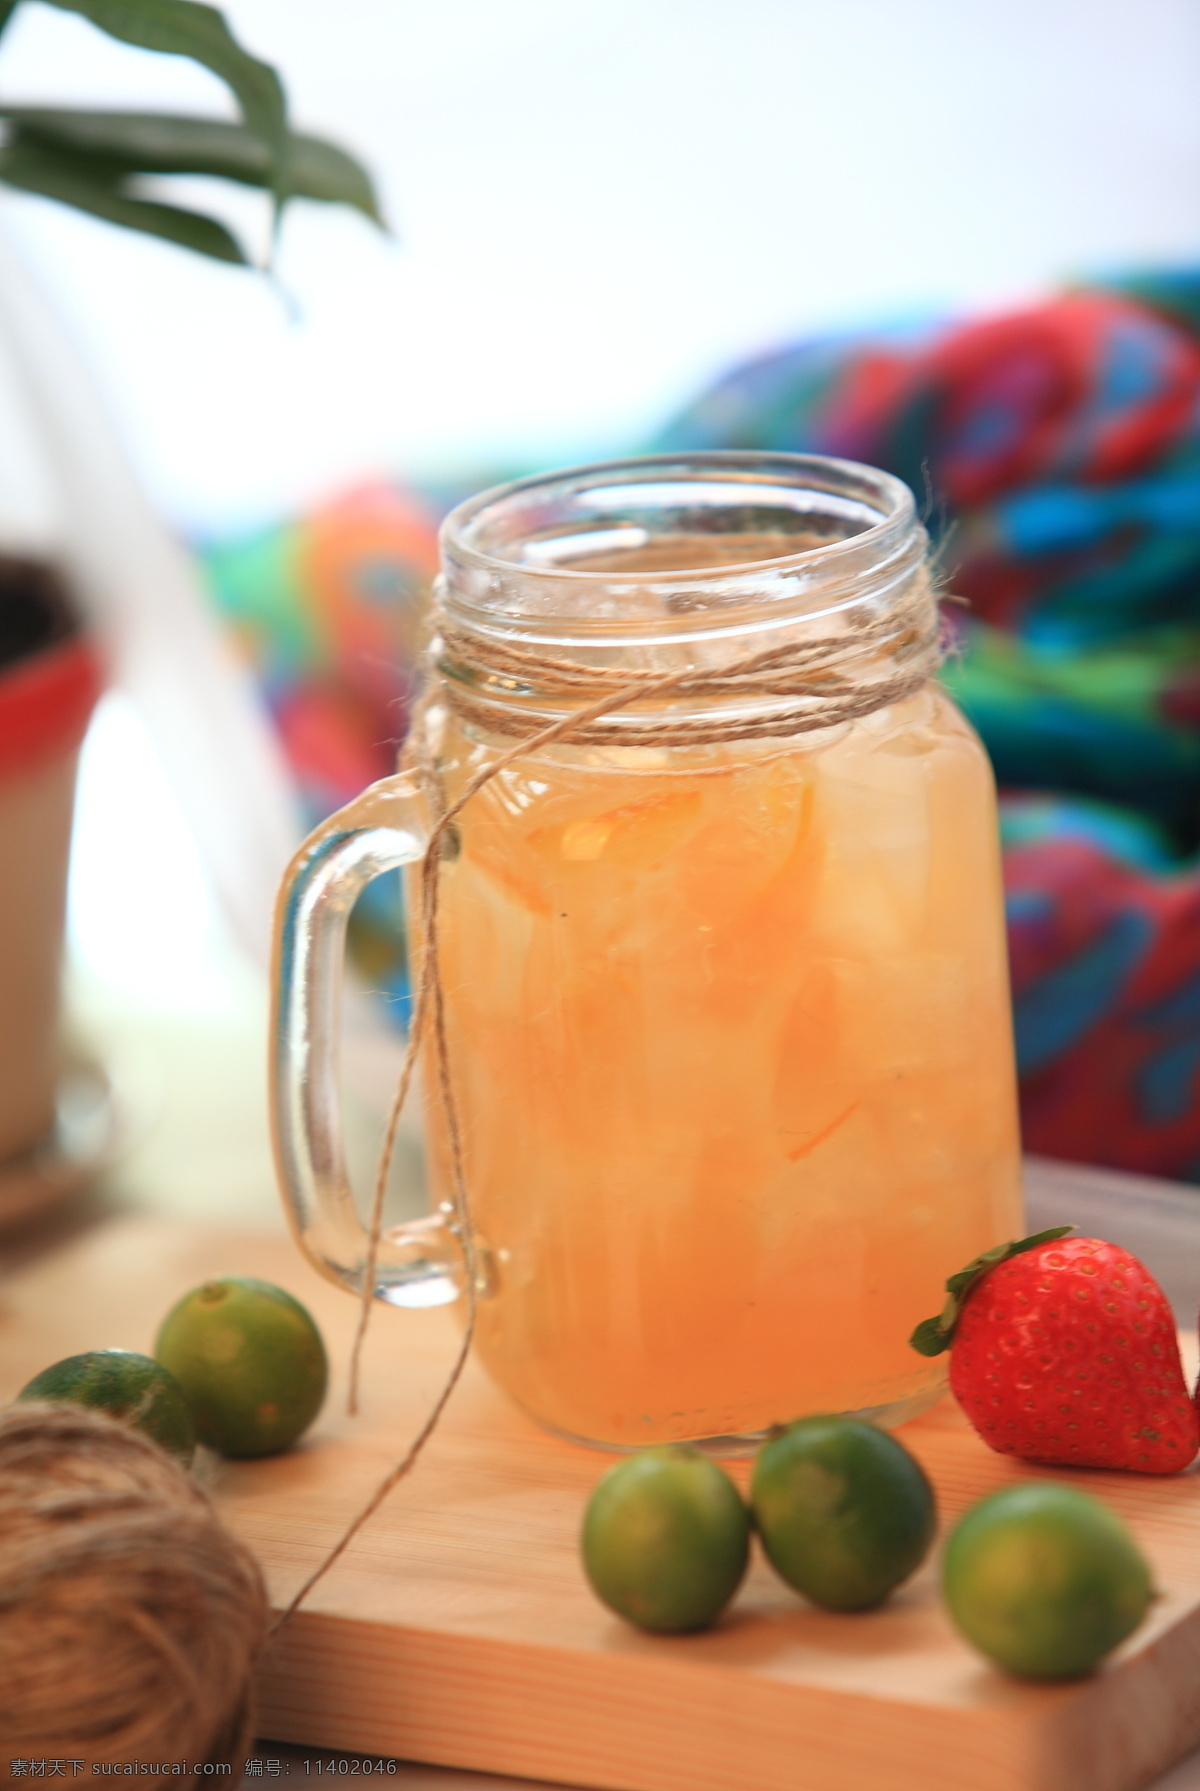 黄金柚子茶 柚子 橘子 水果 草莓 果汁 奶茶 饮品 食品图片系列 饮料酒水 餐饮美食